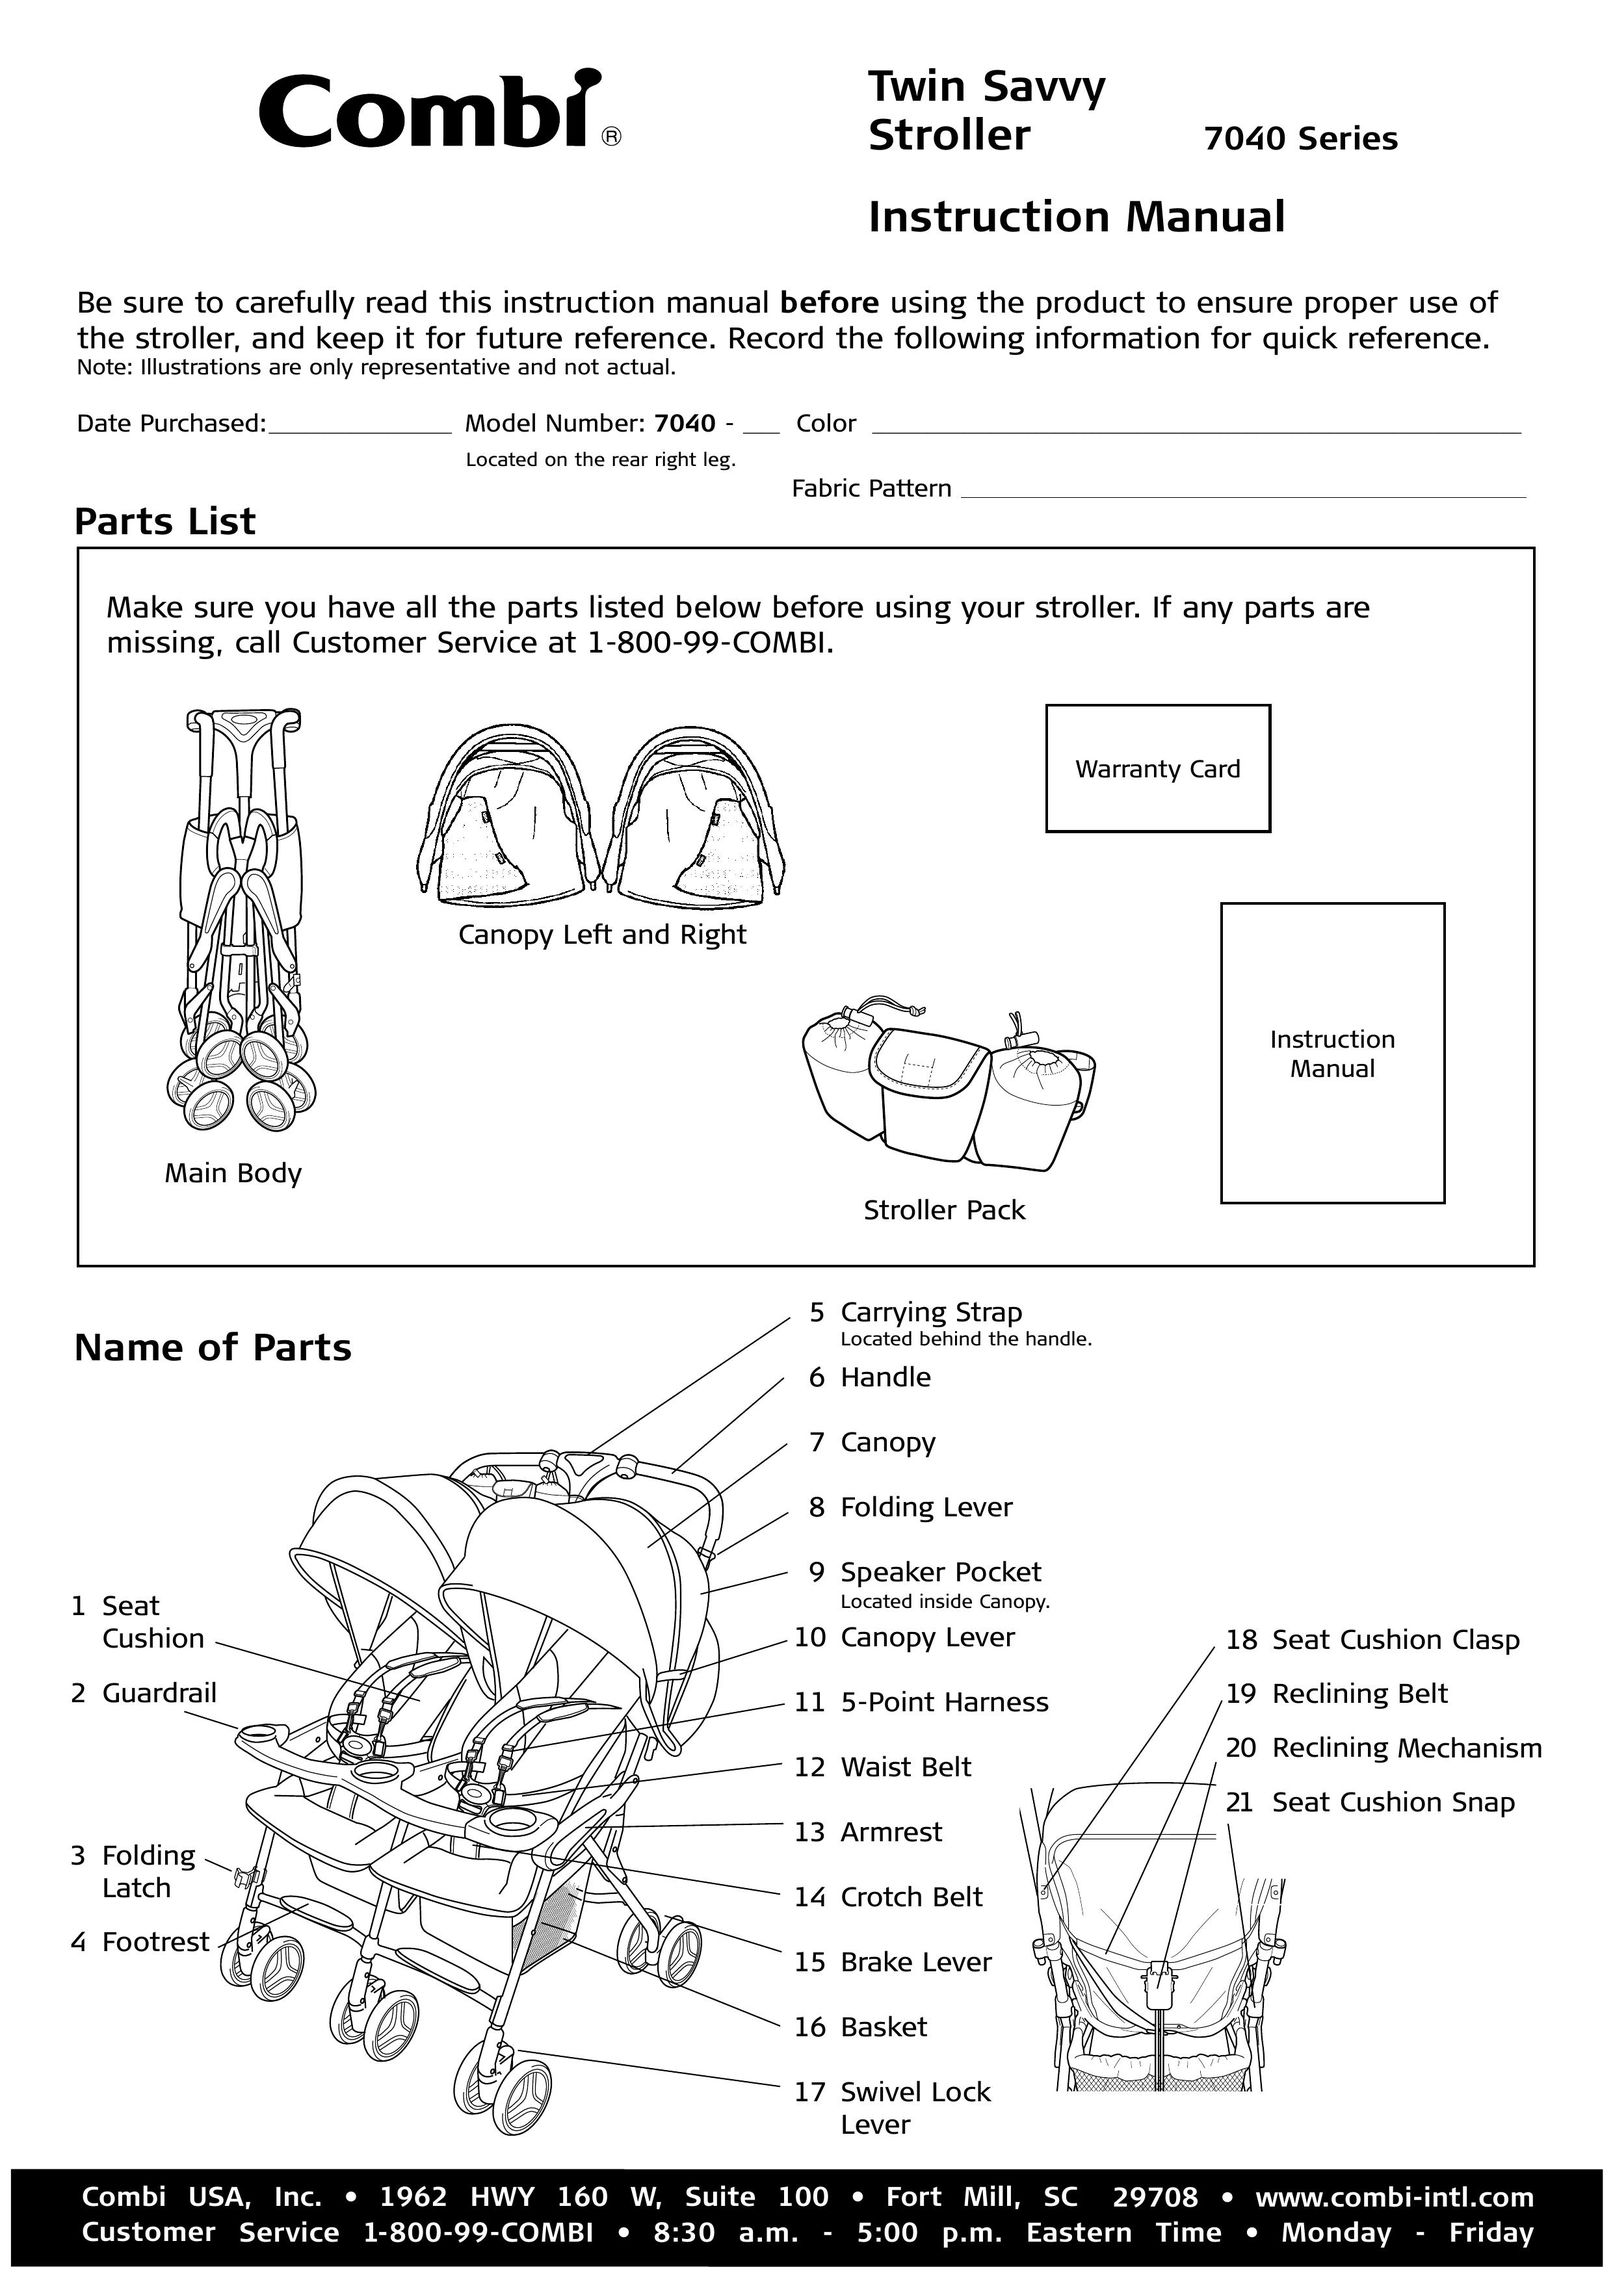 Combi 7040 Series Stroller User Manual